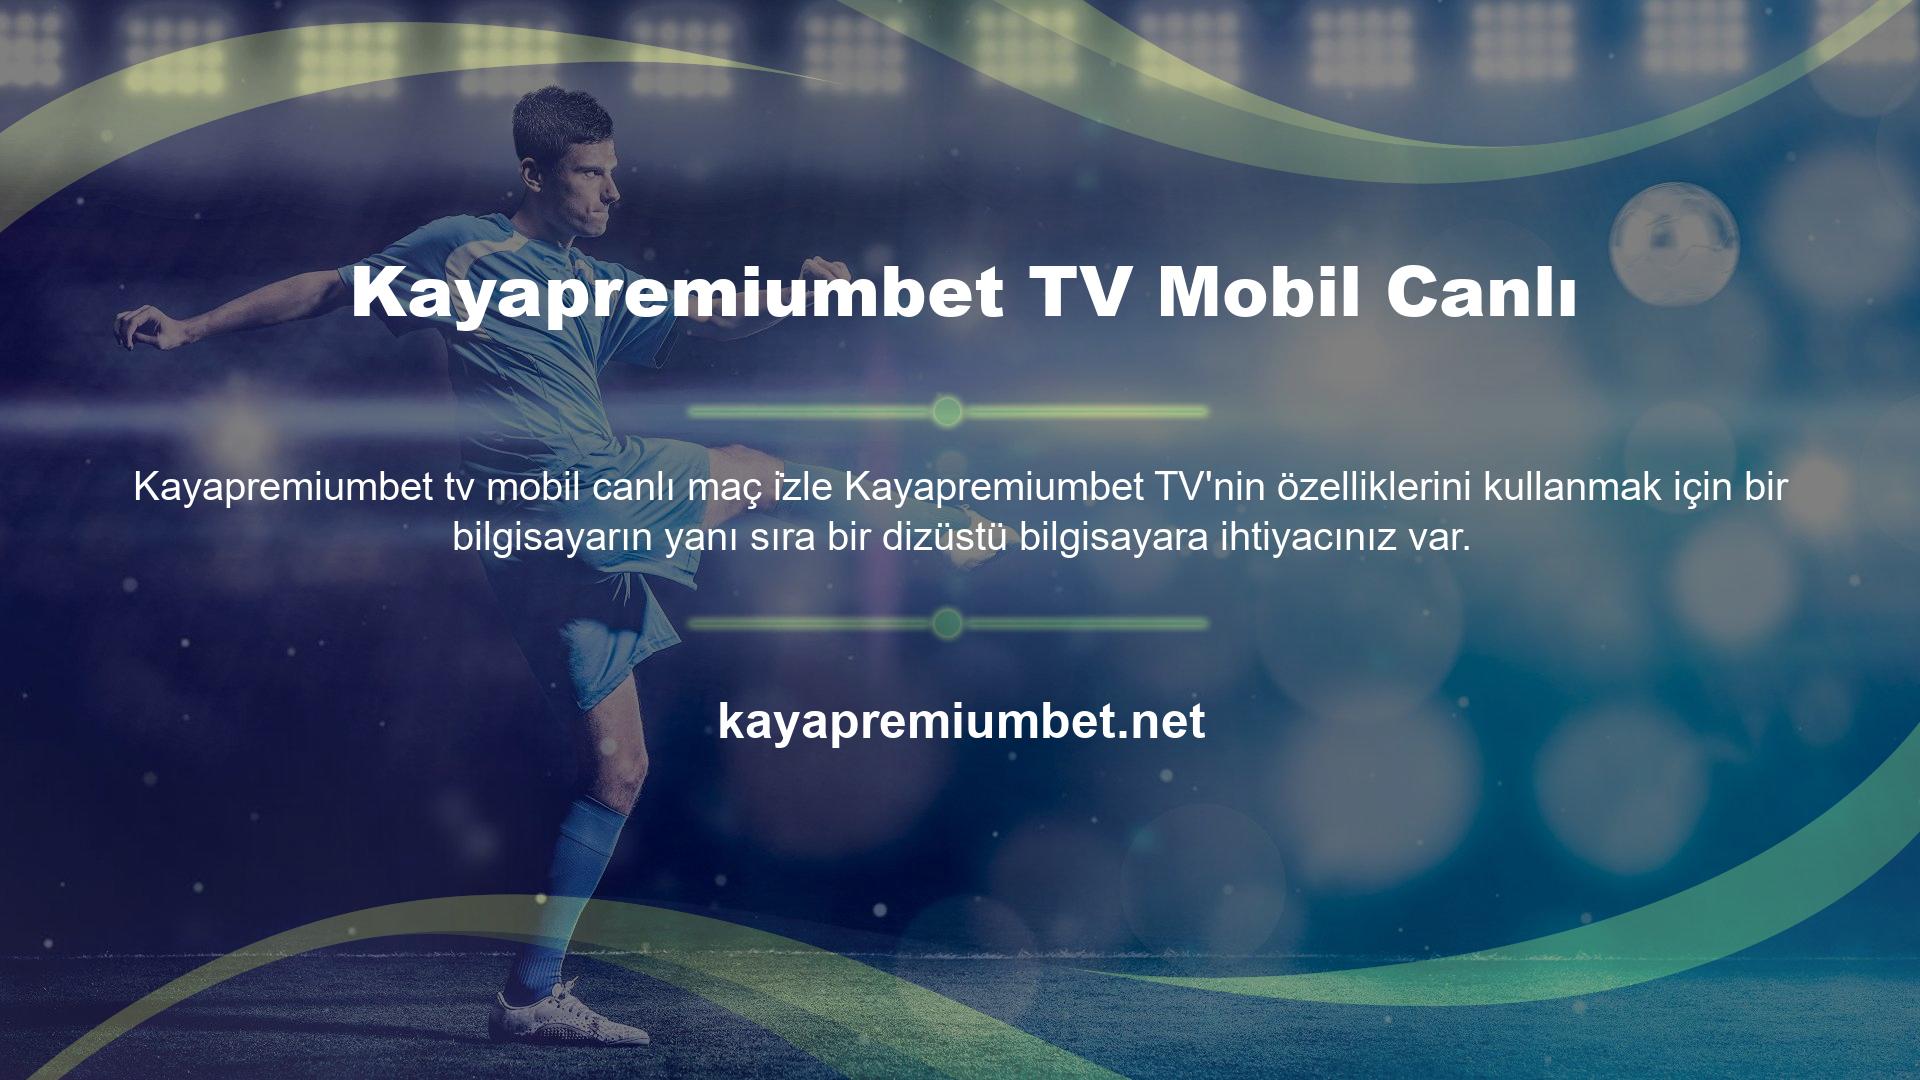 Aynı zamanda Kayapremiumbet mobil canlı maç izleme özelliğini de kullanabilirsiniz